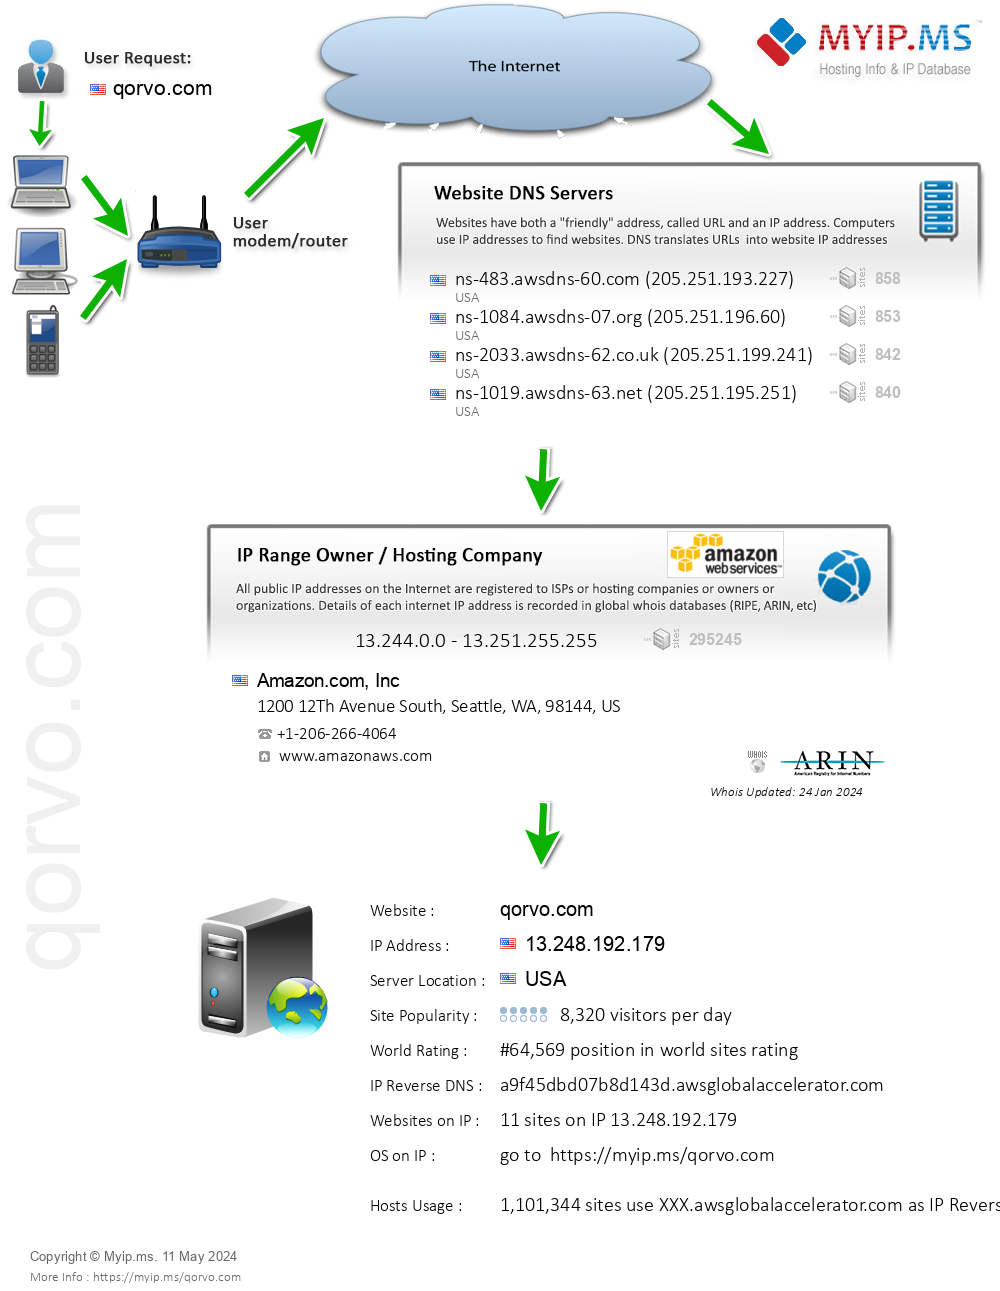 Qorvo.com - Website Hosting Visual IP Diagram